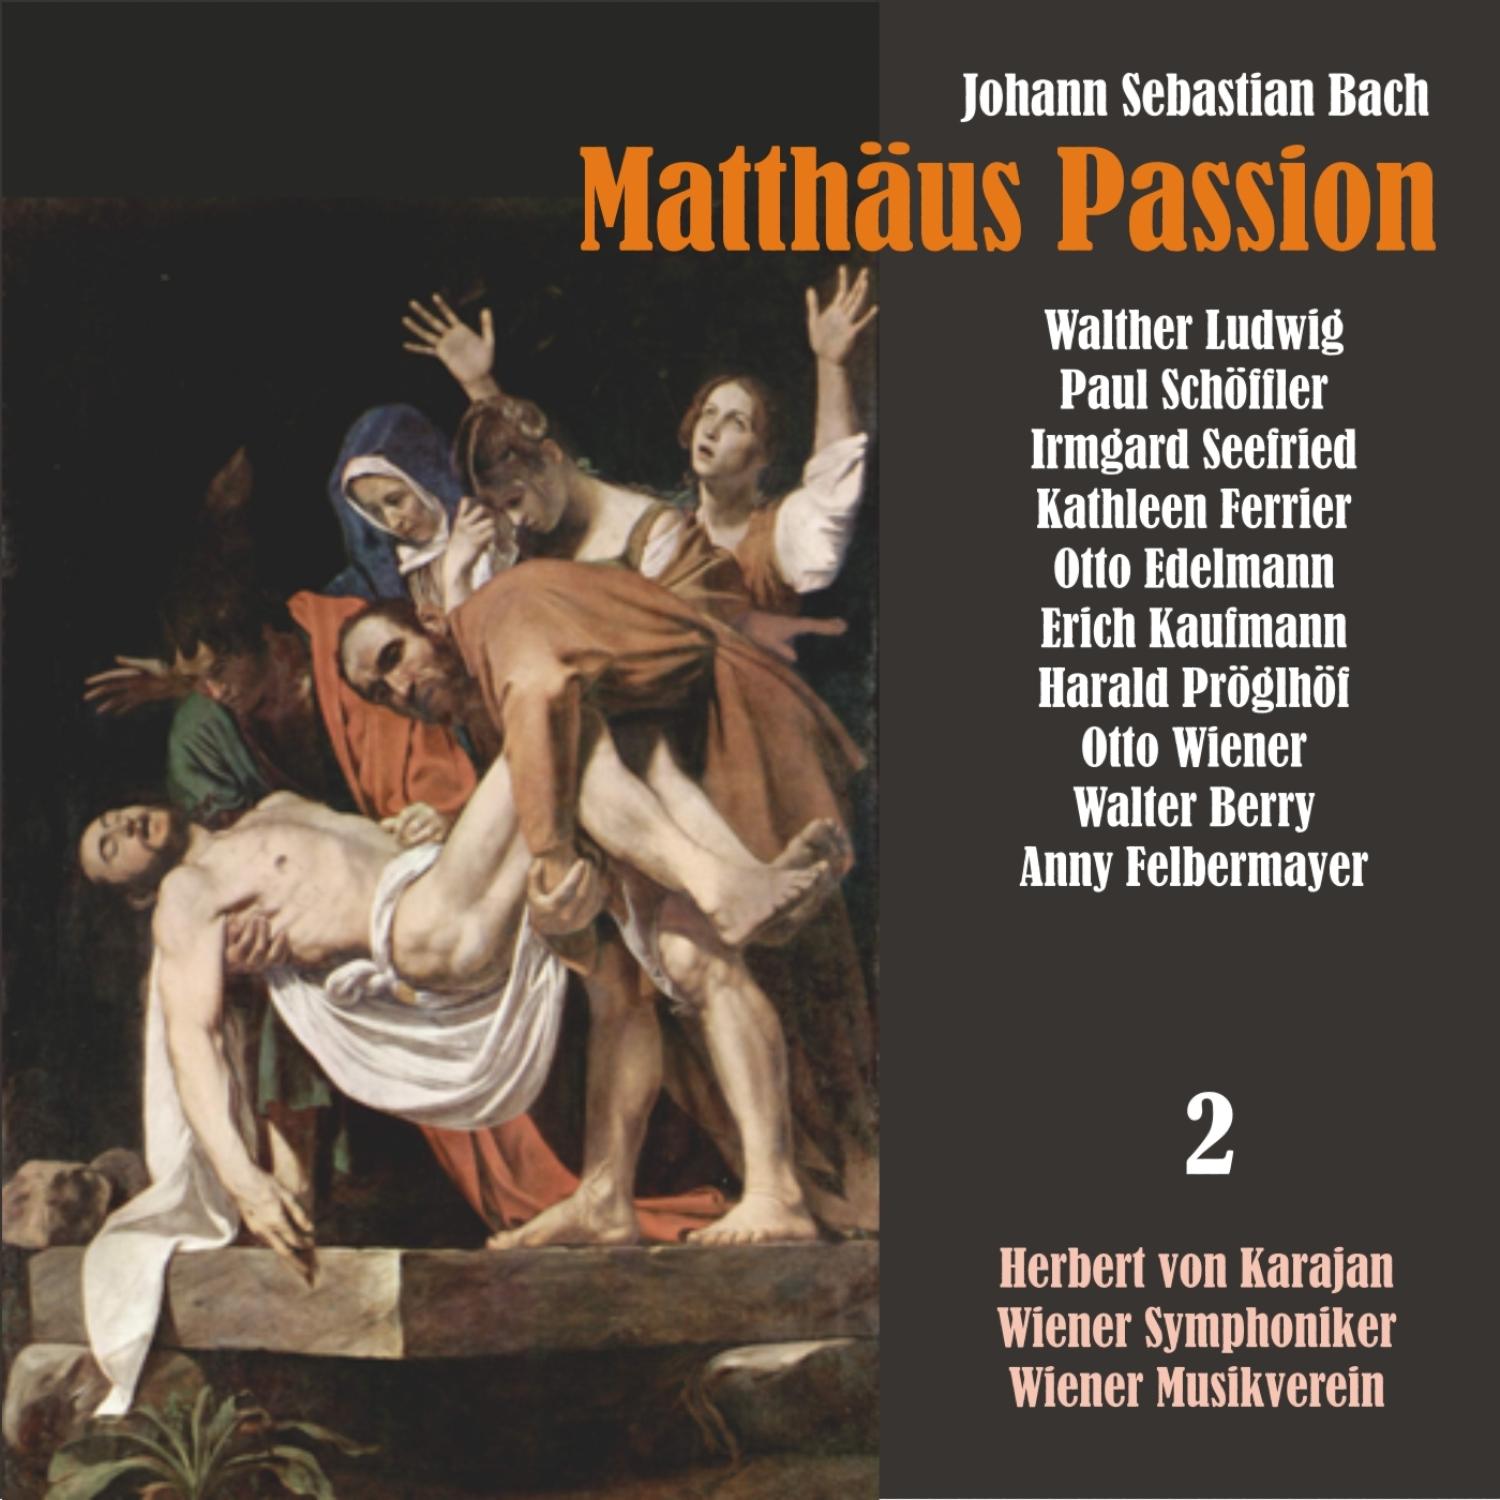 Matth us Passion, BWV 244: " Was mein Gott will, das gscheh allzeit"